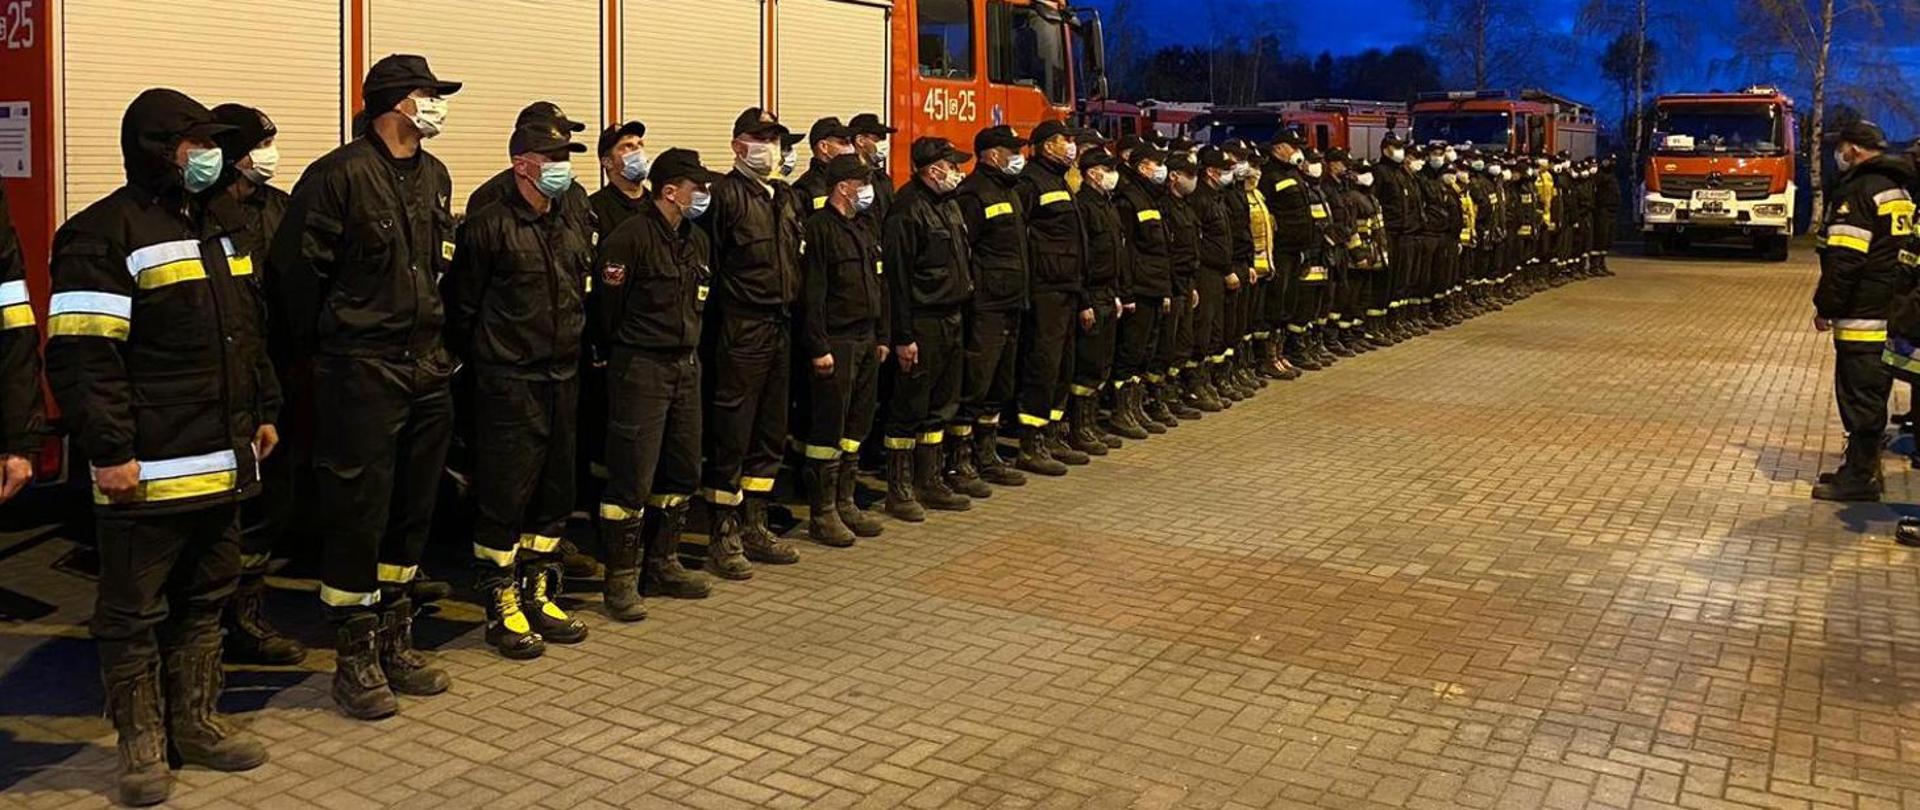 Zdjęcie przedstawia grupę strażaków stojących w dwuszeregu frontem przed dowódcą. Strażacy mają na sobie maseczki.